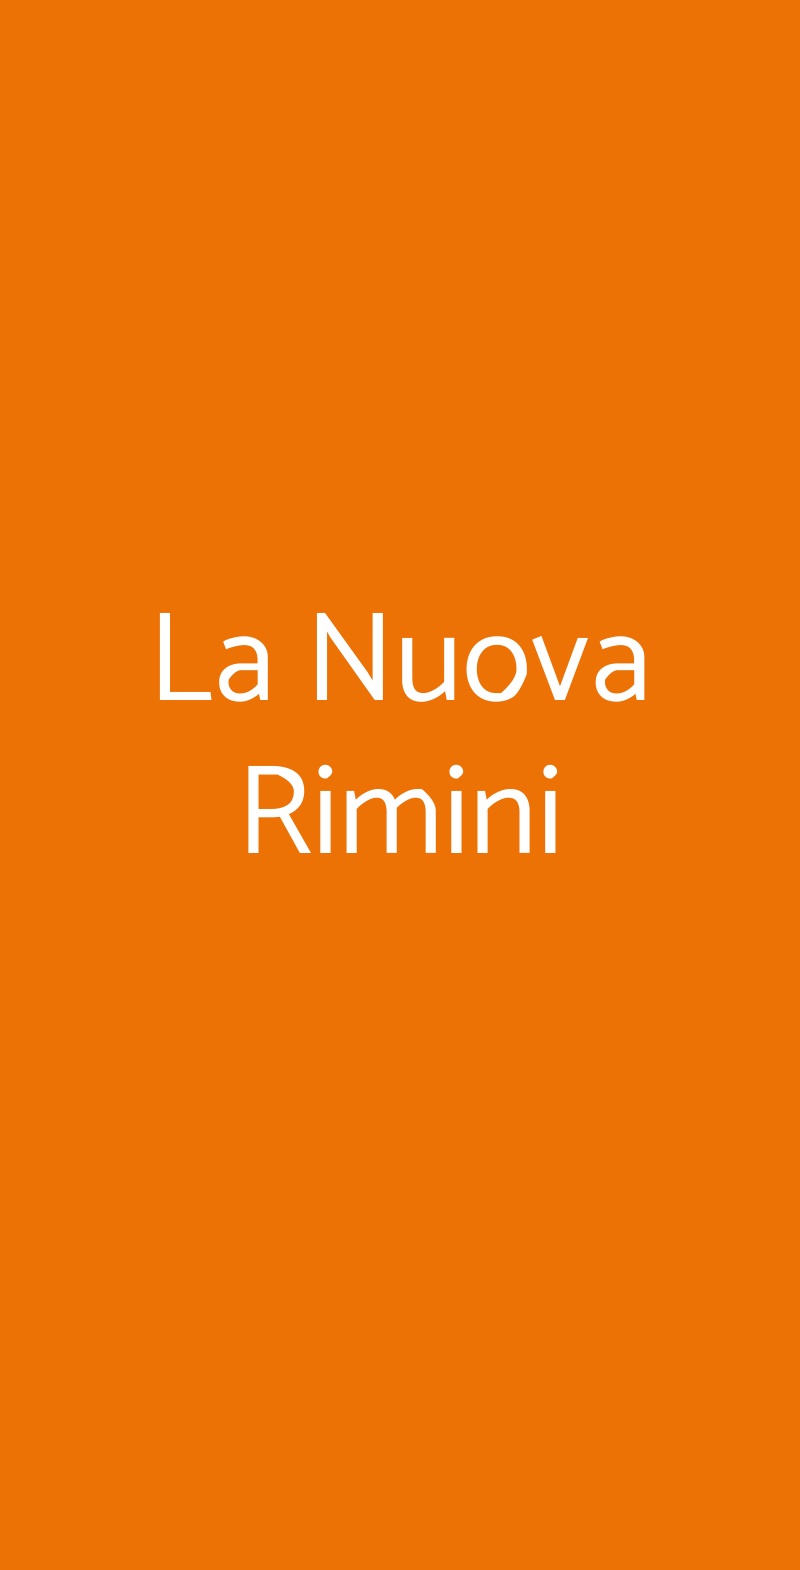 La Nuova Rimini Cazzago San Martino menù 1 pagina